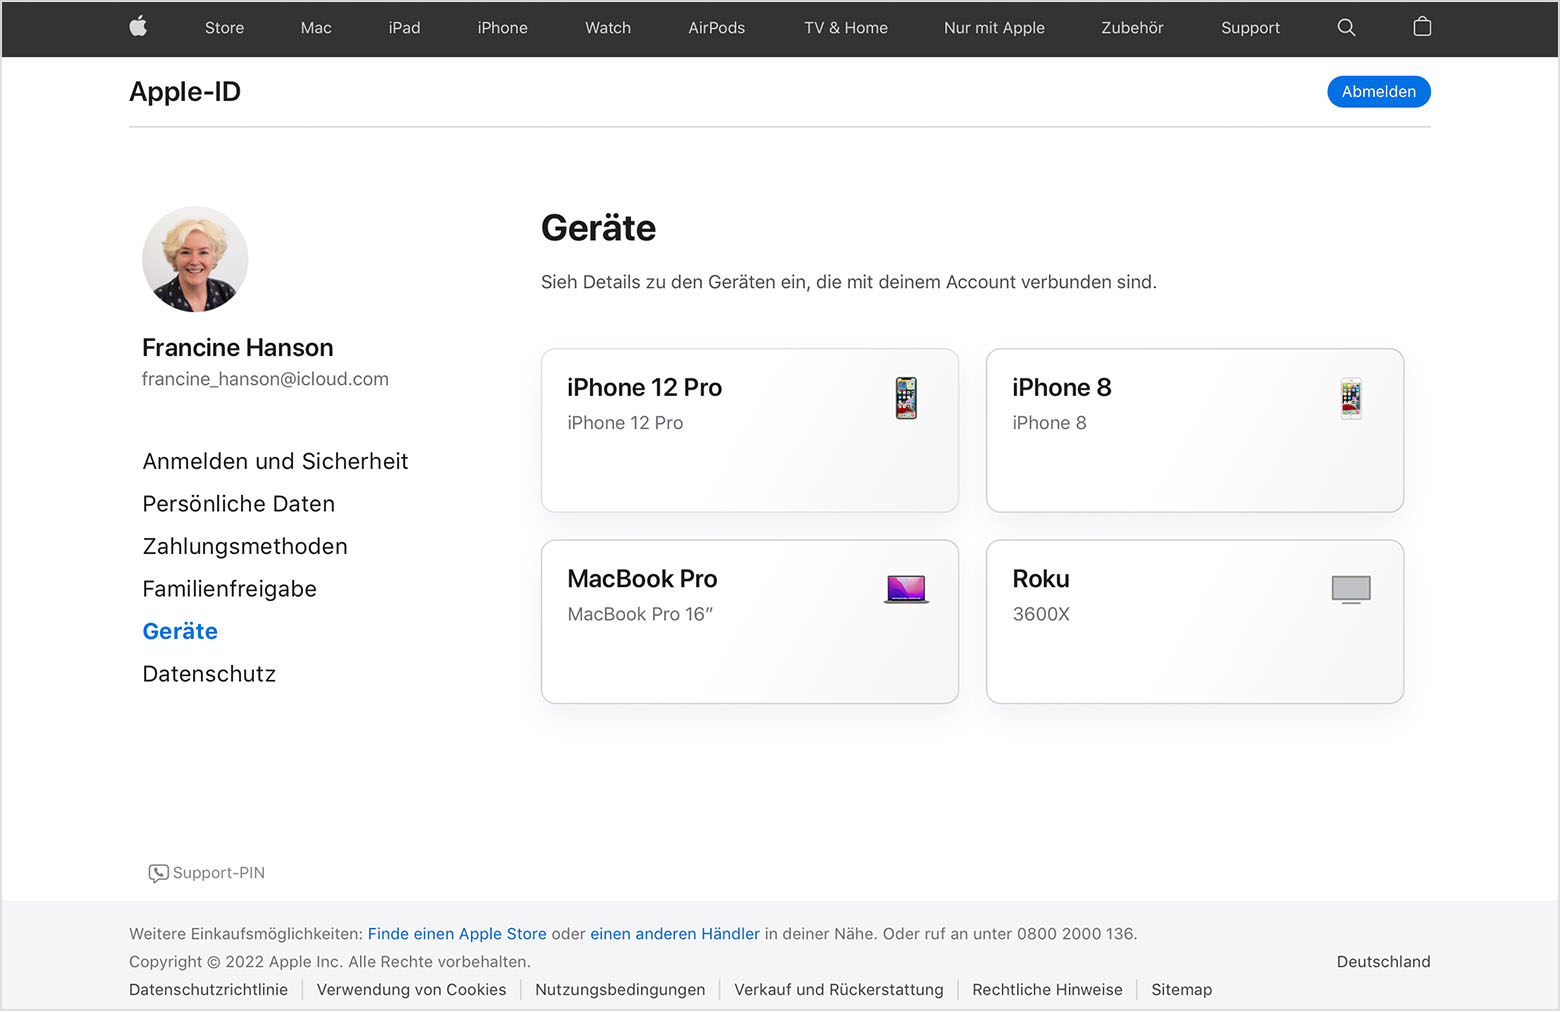 Ein Bild von appleid.apple.com mit drei Geräten für Francine Hanson: einem iPhone 12 Pro, einem MacBook Pro und einem Roku.